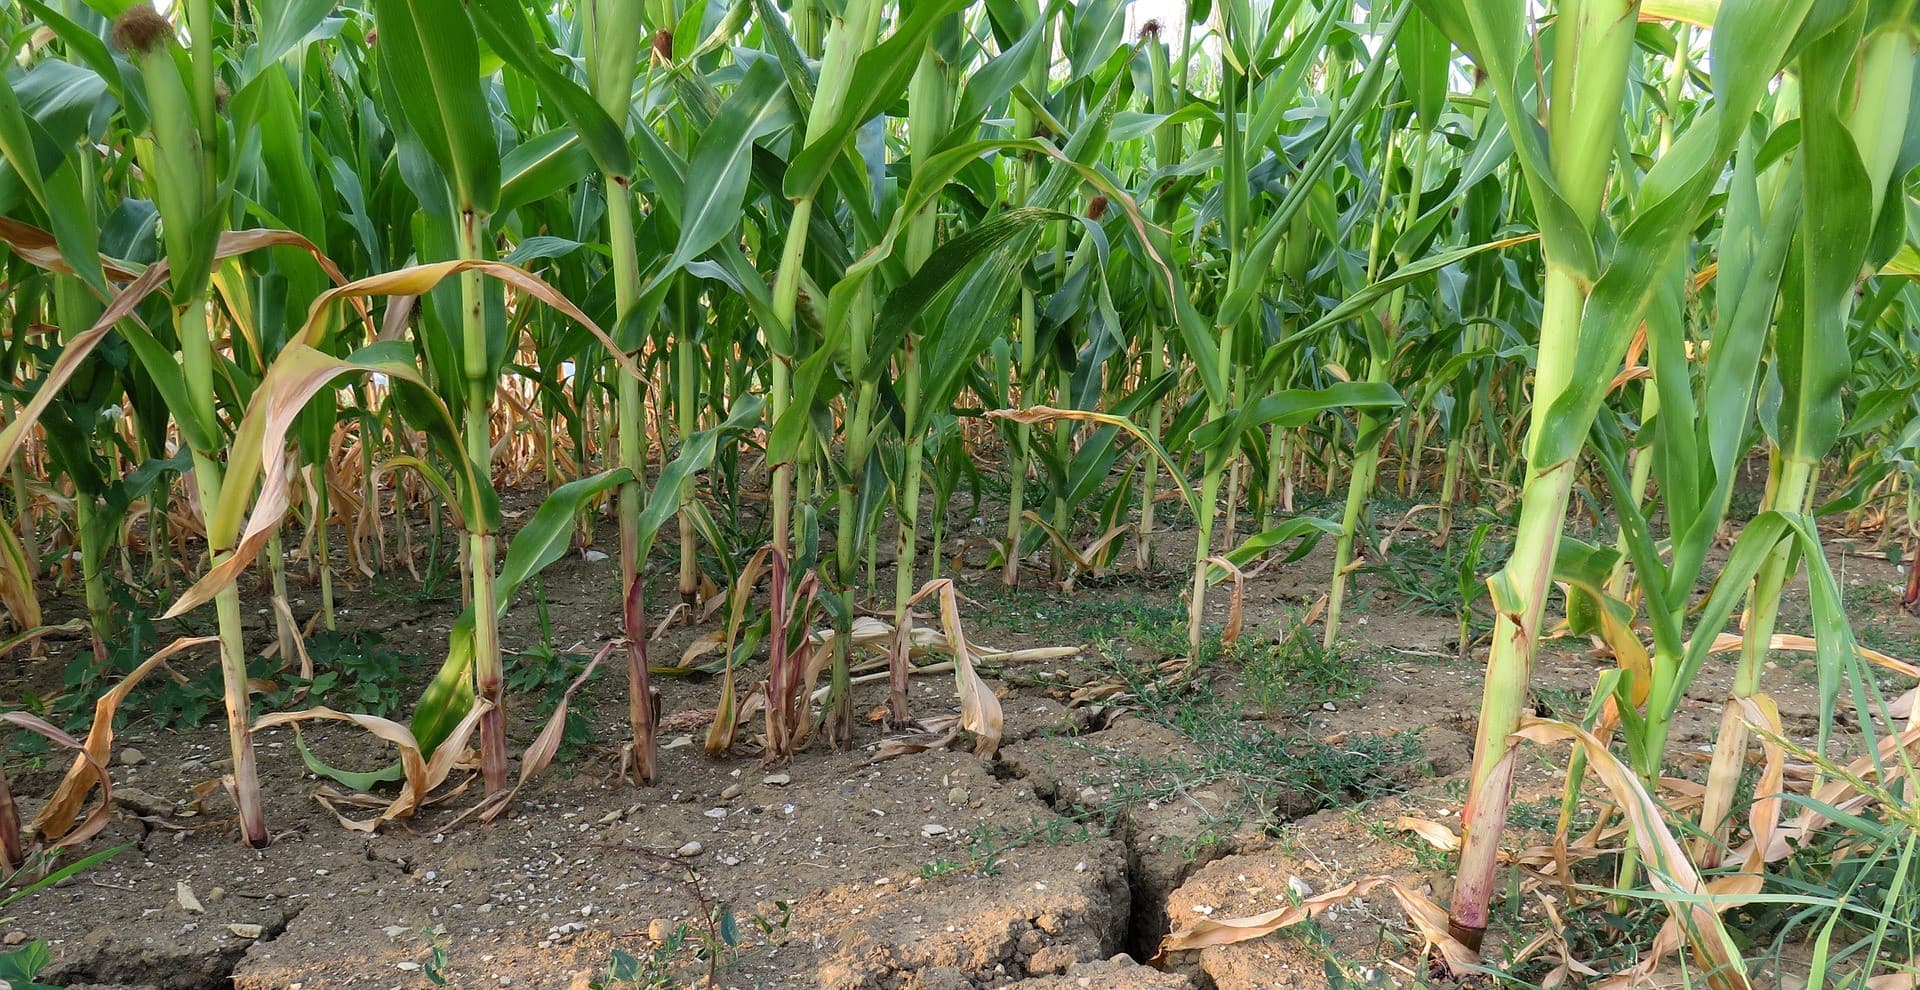 Corn in dry soil